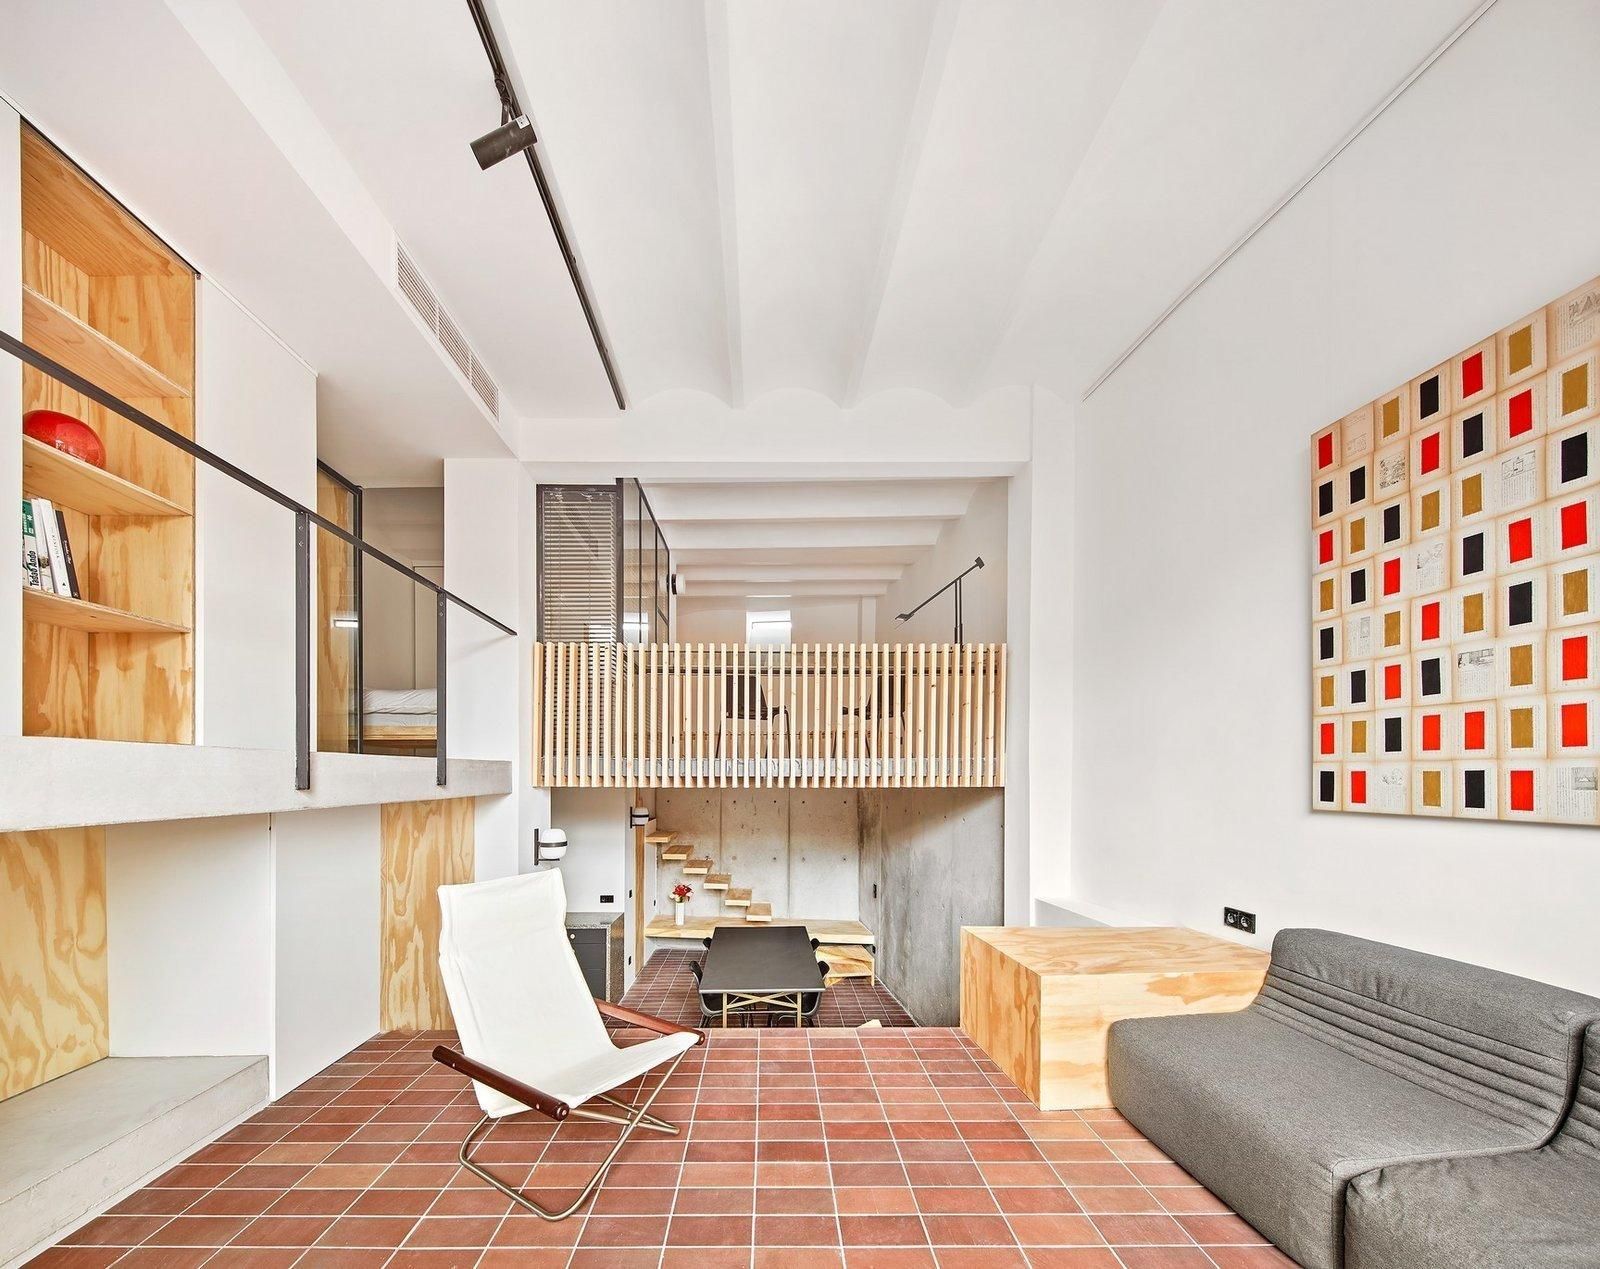 С заброшенного помещения в просторный дом: фото минималистичного проекта в Барселоне